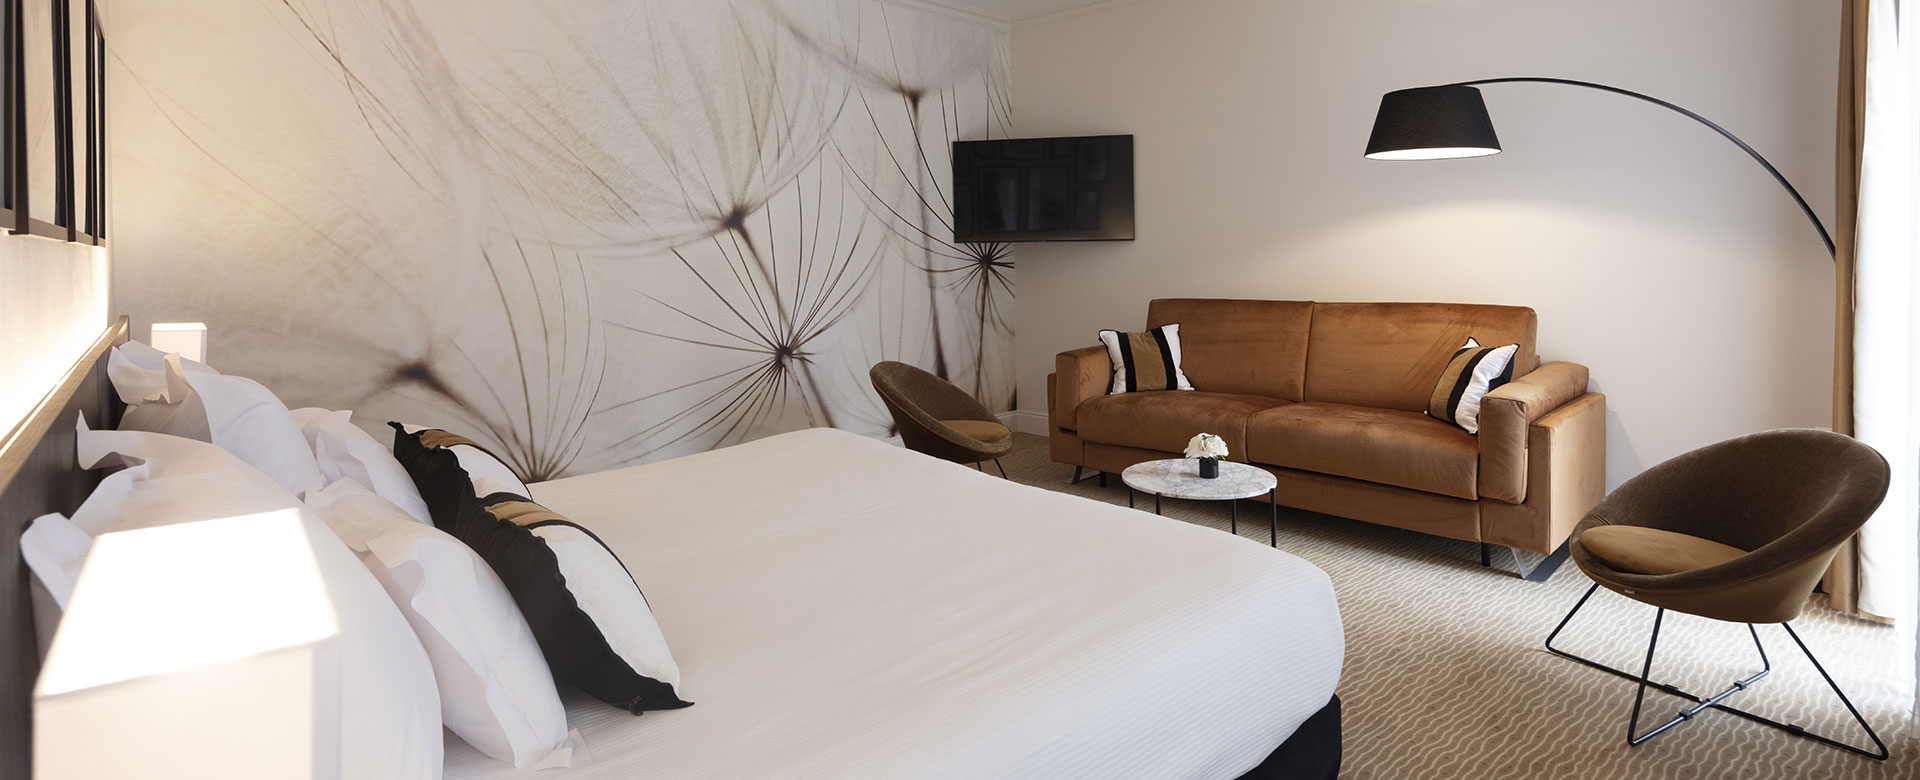 Chambres Junior Suite du Palmyra Golf, hôtel 4 étoiles au Cap d’Agde, avec canapé lit